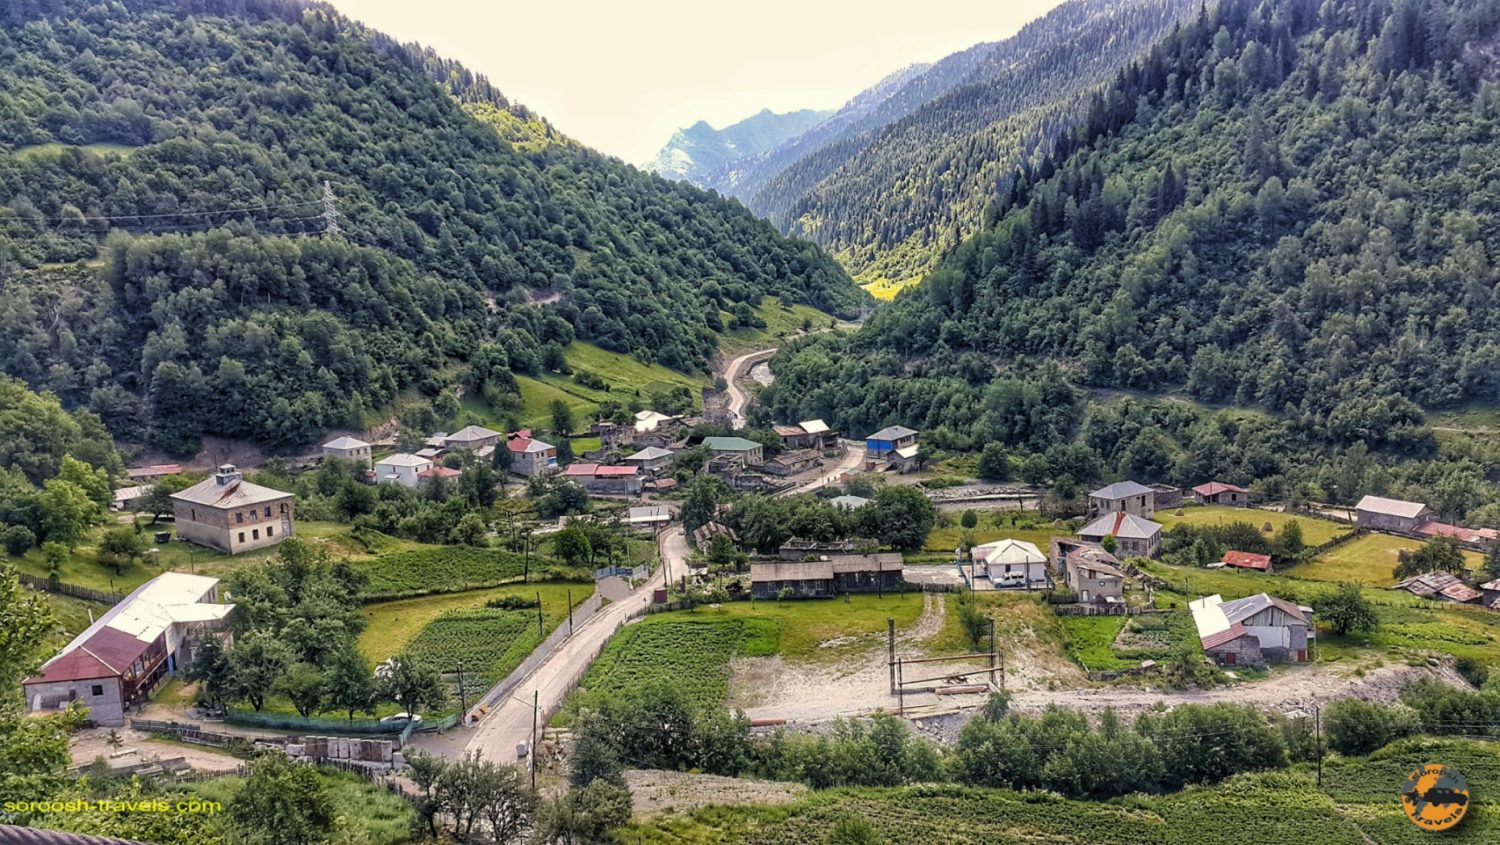 مسیر اوشگولی به مستیا در گرجستان - تابستان 1398 2019